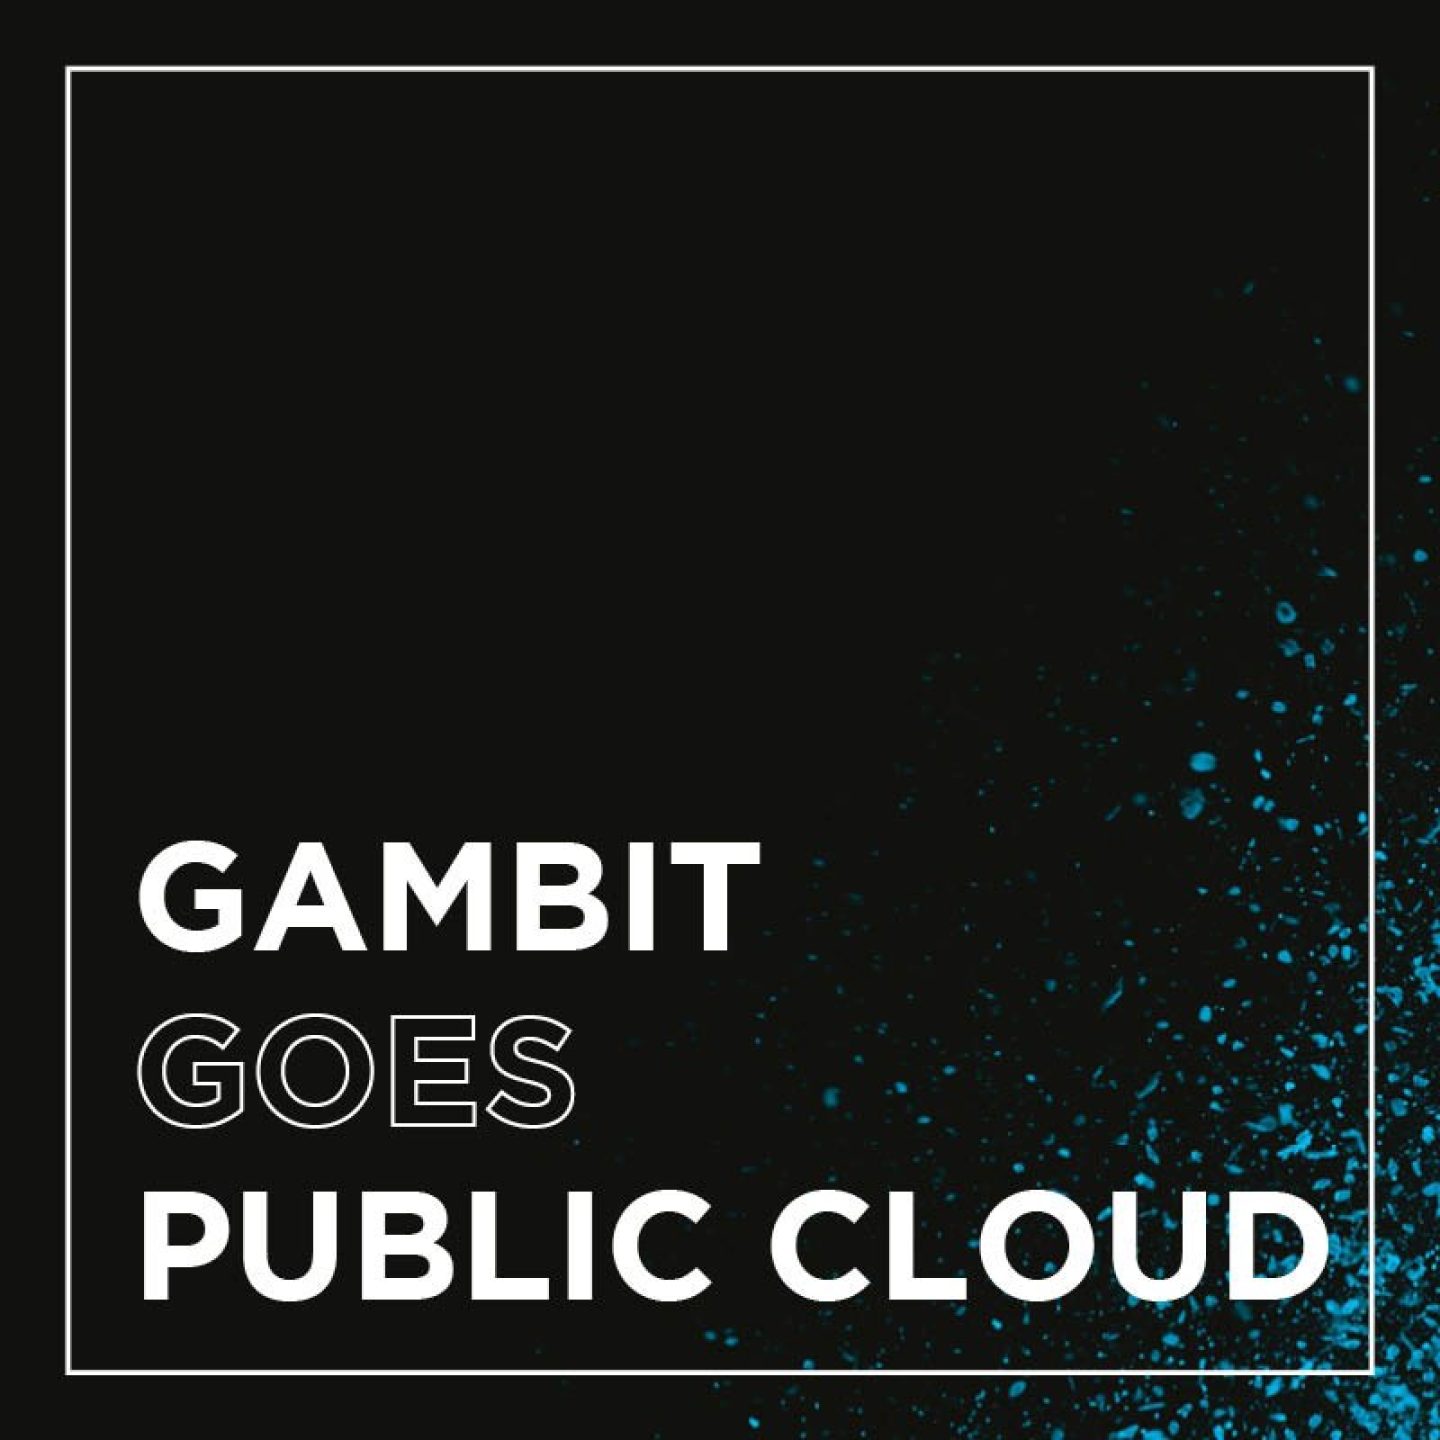 Kachel public cloud gambit goes public cloud